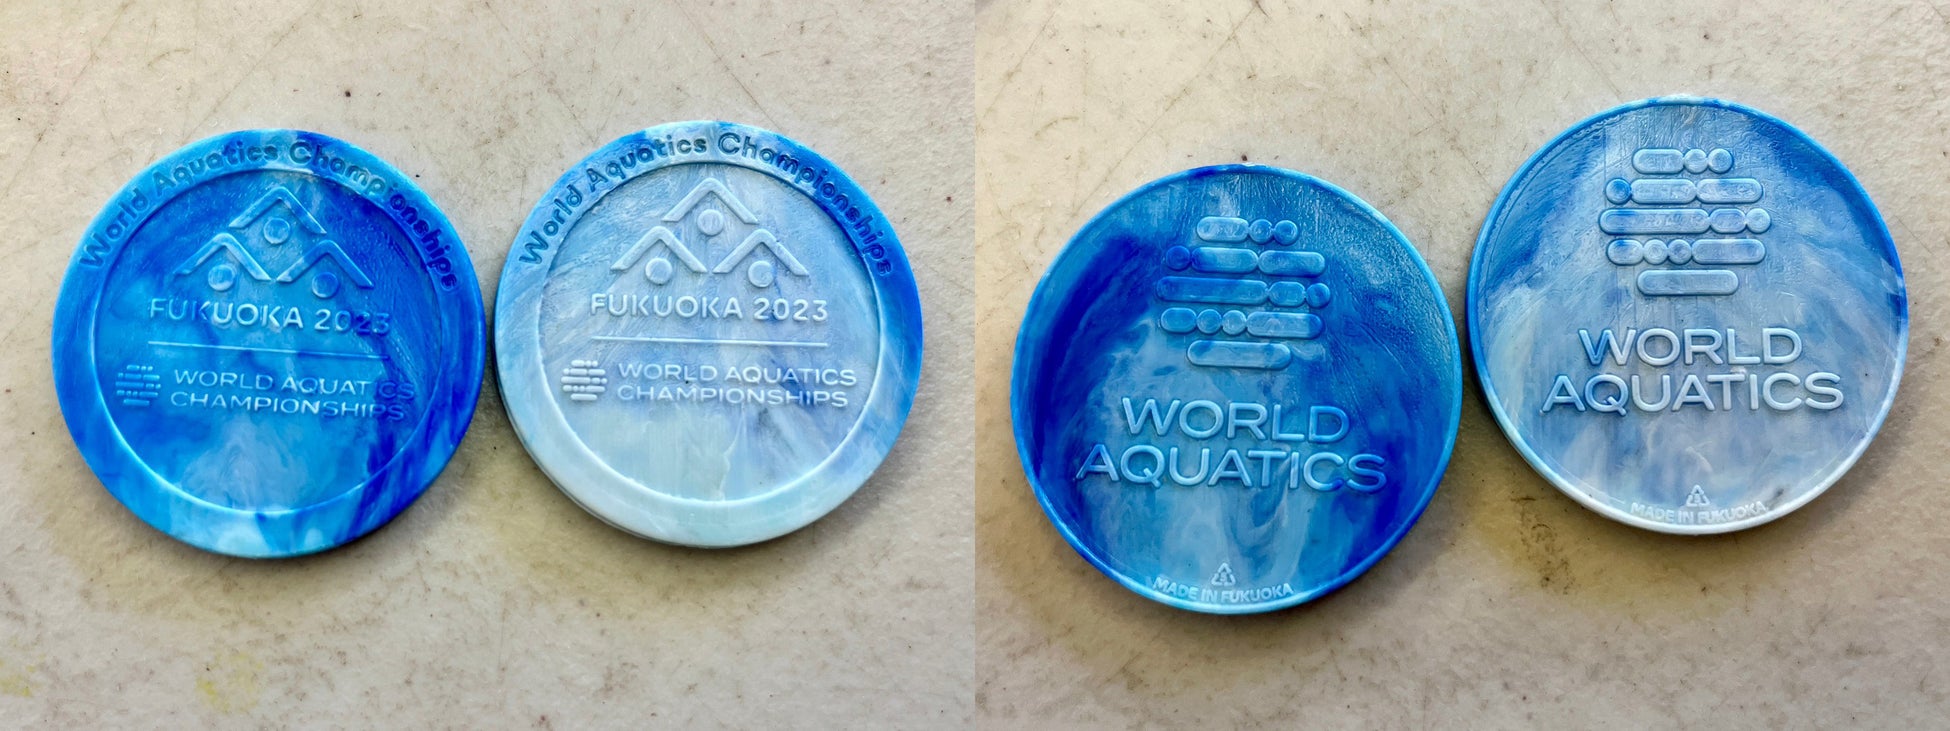 世界水泳選手権2023福岡大会の記念メダルを廃プラリサイクル工場TSUYAZAKI BASE CAMPが廃棄プラスチック(ペットボトルキャップ)から製作しました!!